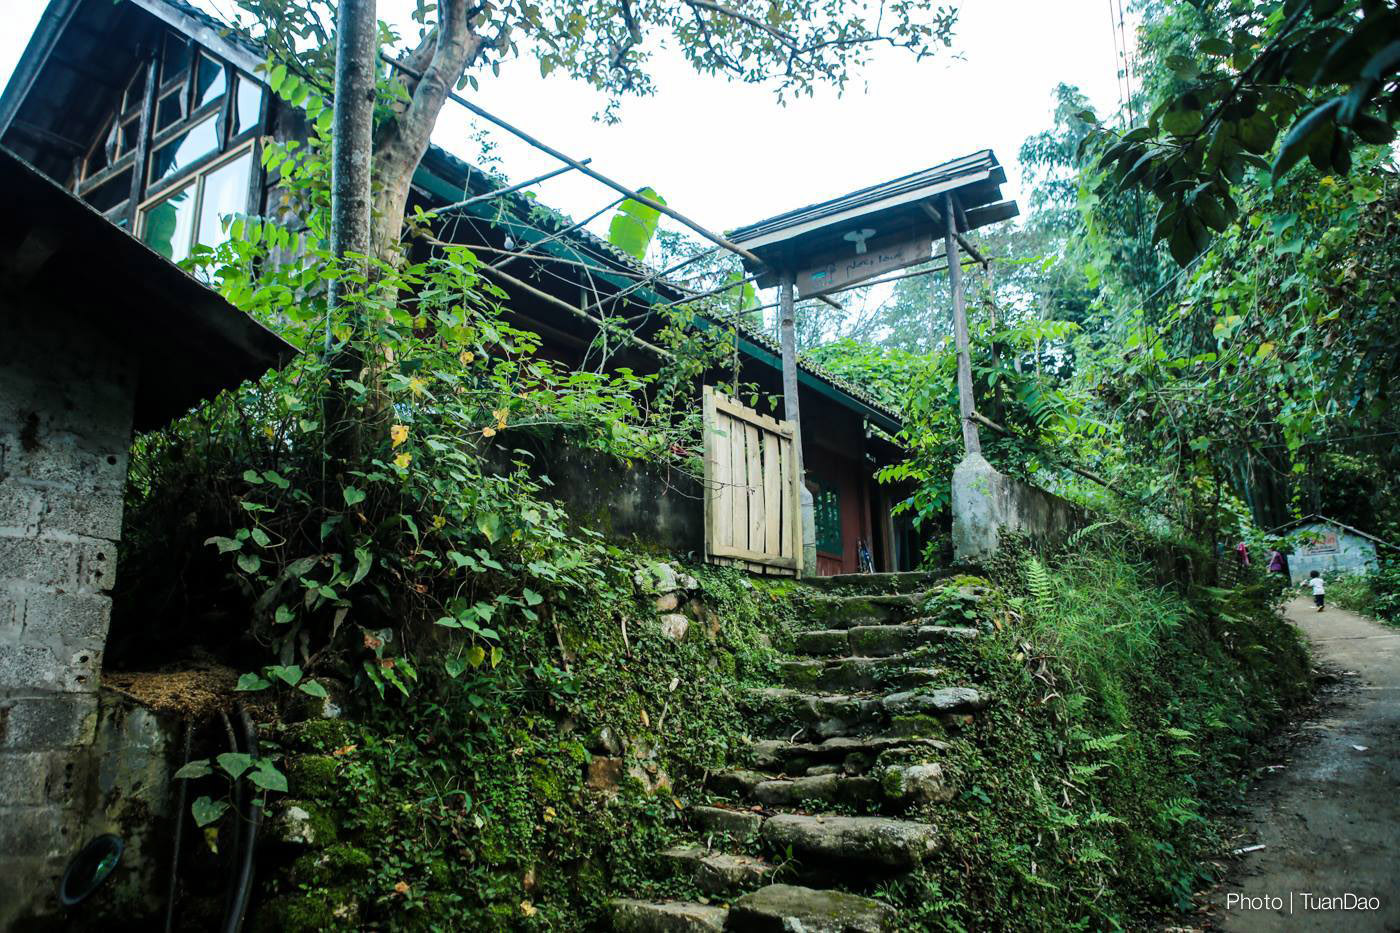 homestay sapa phori house 1 - 5 homestay và địa điểm nghỉ dưỡng gần gũi với thiên nhiên khi đến Sapa